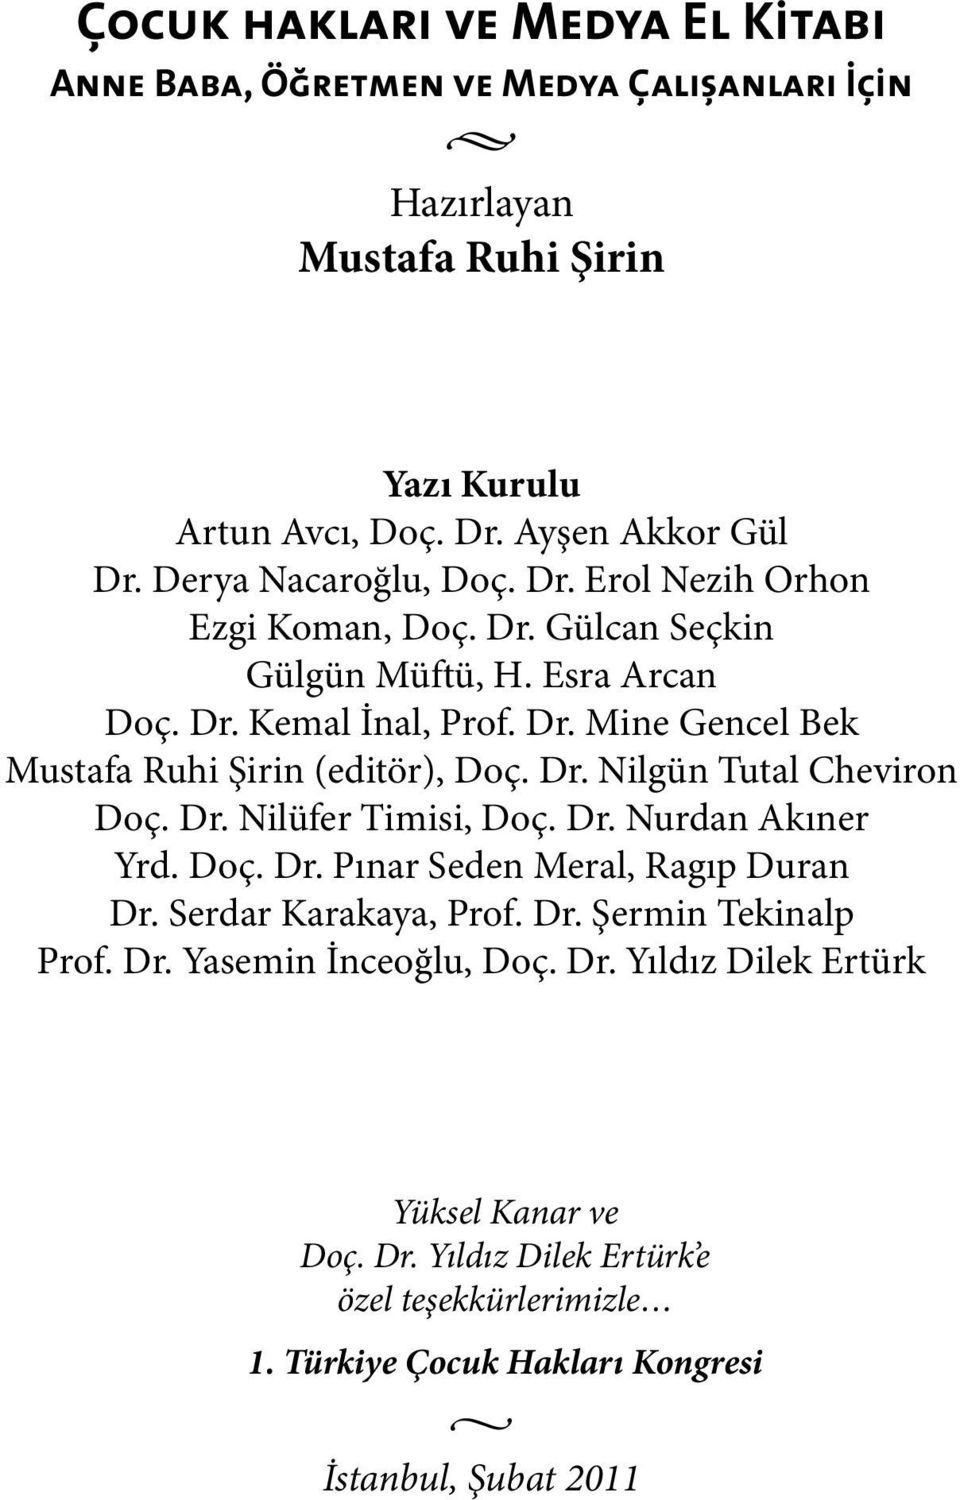 Dr. Nilgün Tutal Cheviron Doç. Dr. Nilüfer Timisi, Doç. Dr. Nurdan Akıner Yrd. Doç. Dr. Pınar Seden Meral, Ragıp Duran Dr. Serdar Karakaya, Prof. Dr. Şermin Tekinalp Prof.